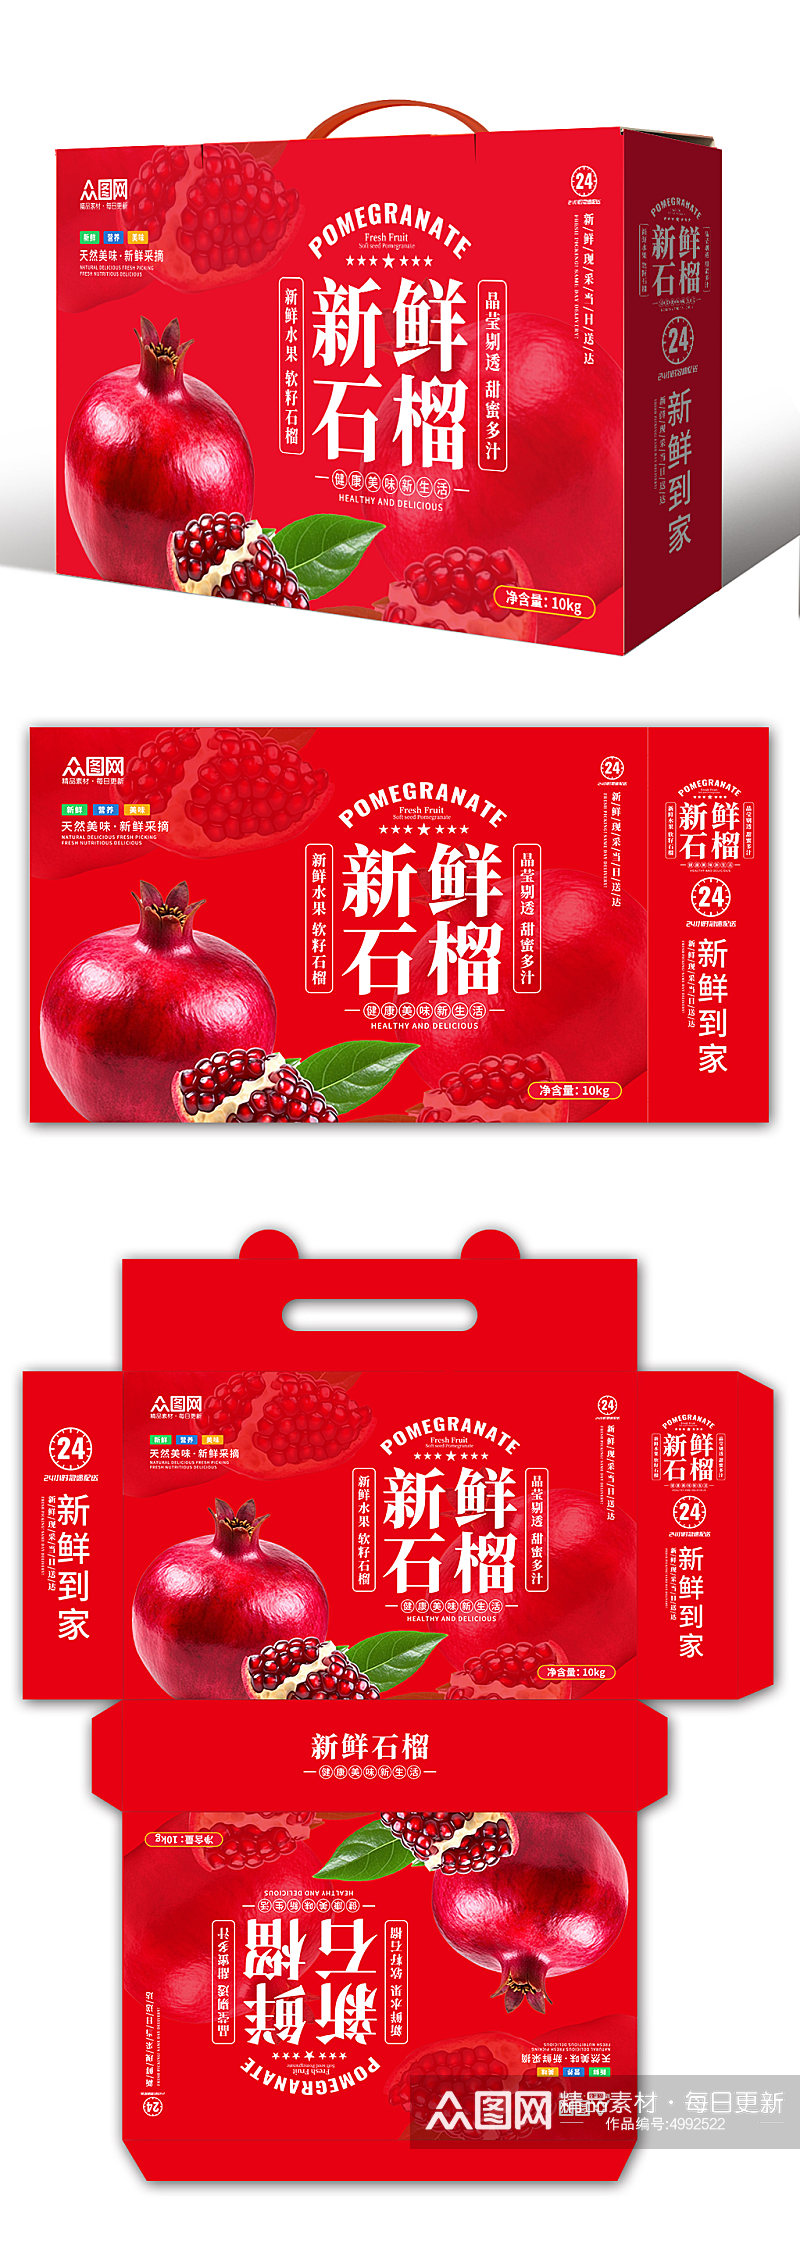 红色高端农产品新鲜水果石榴包装素材